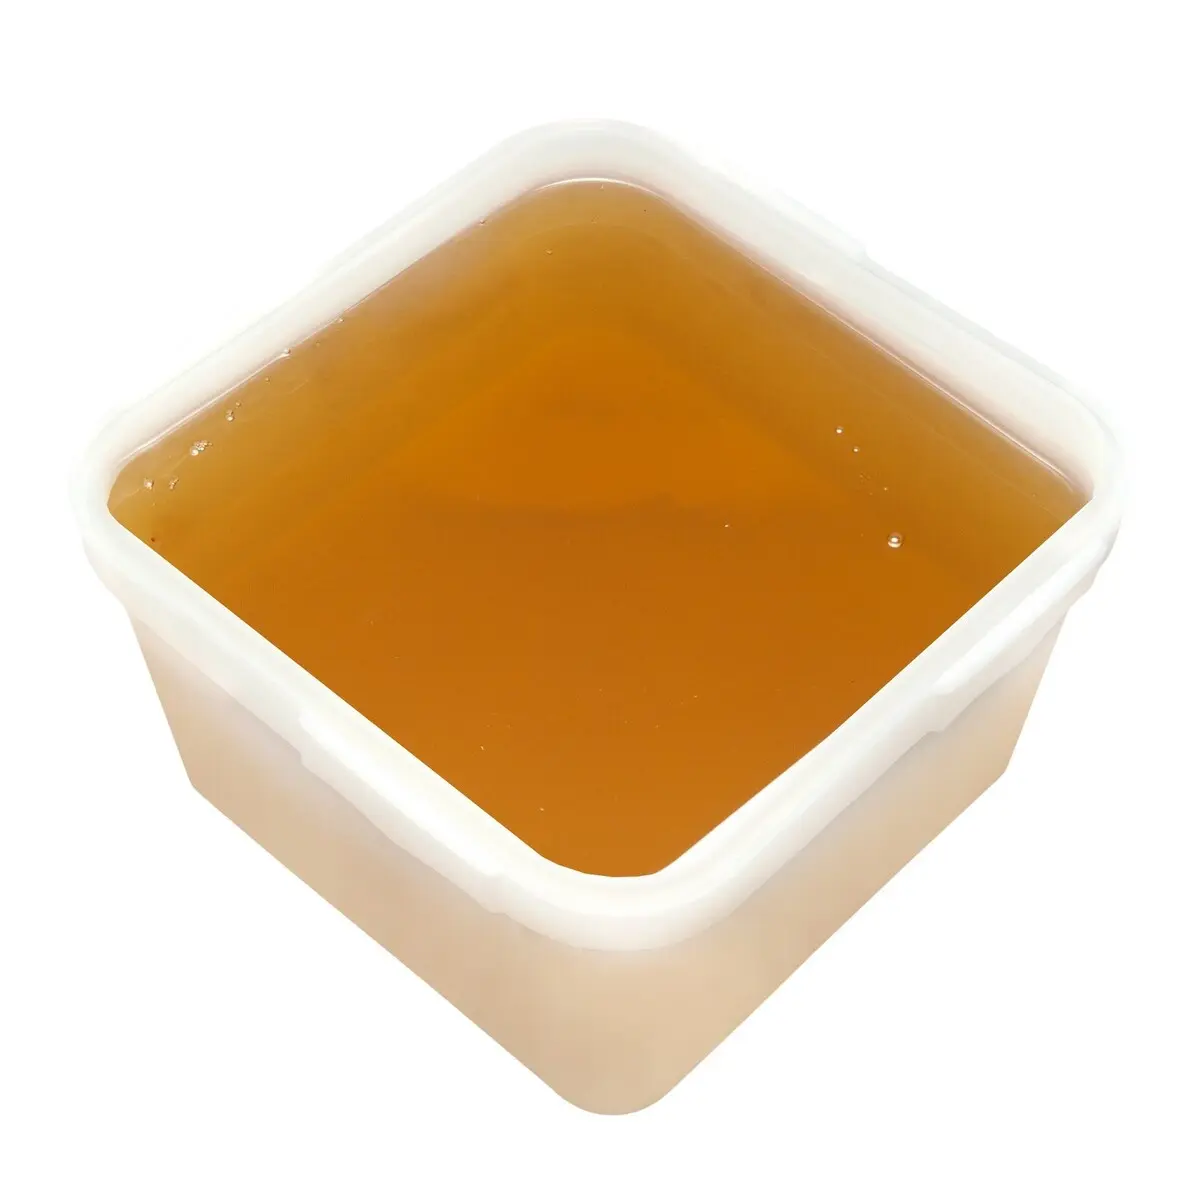 Мед липовый (ВЕС: 700 гр)